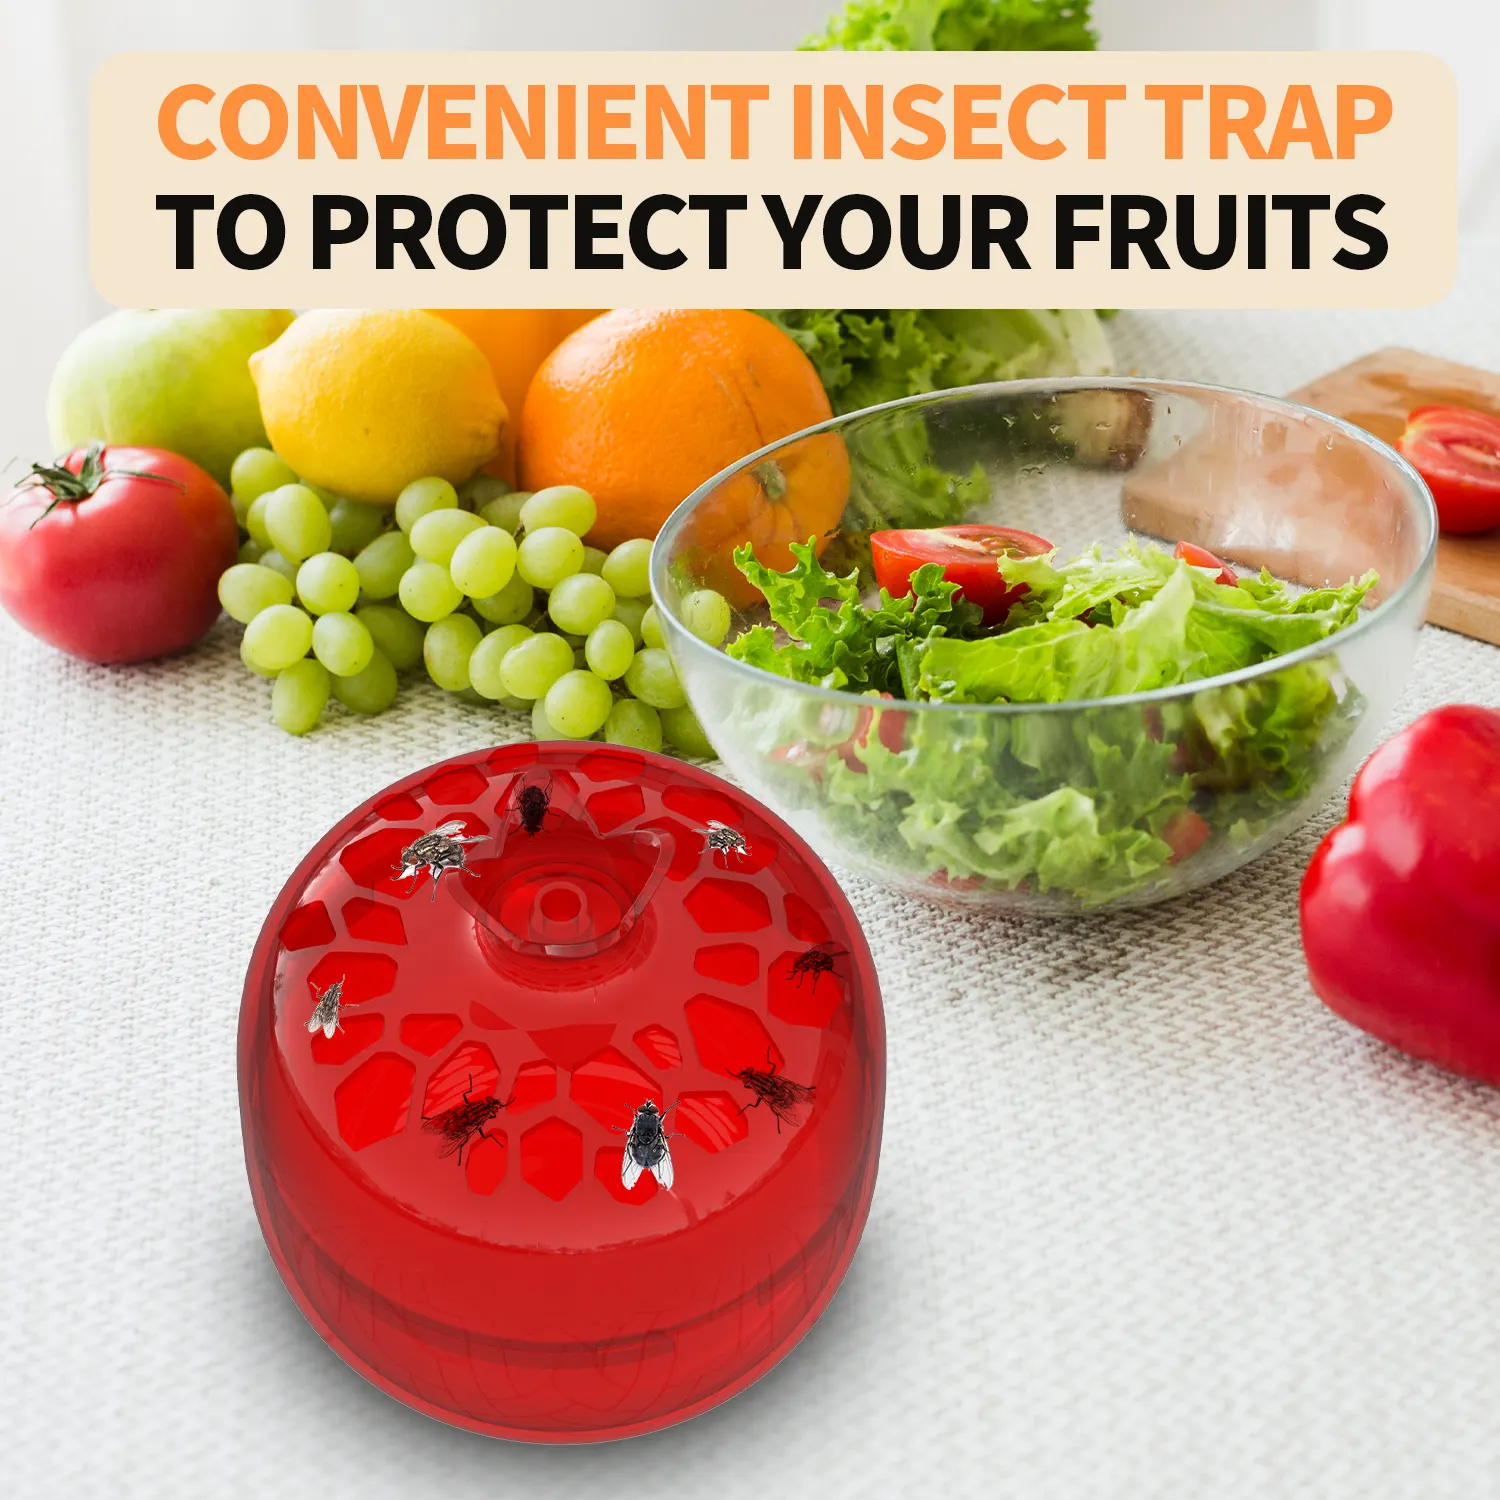 Innovadoras trampas para moscas de frutas con agujeros en forma de embudo, conveniente trampa automática para moscas de frutas, trampa sostenible para moscas de frutas en interiores